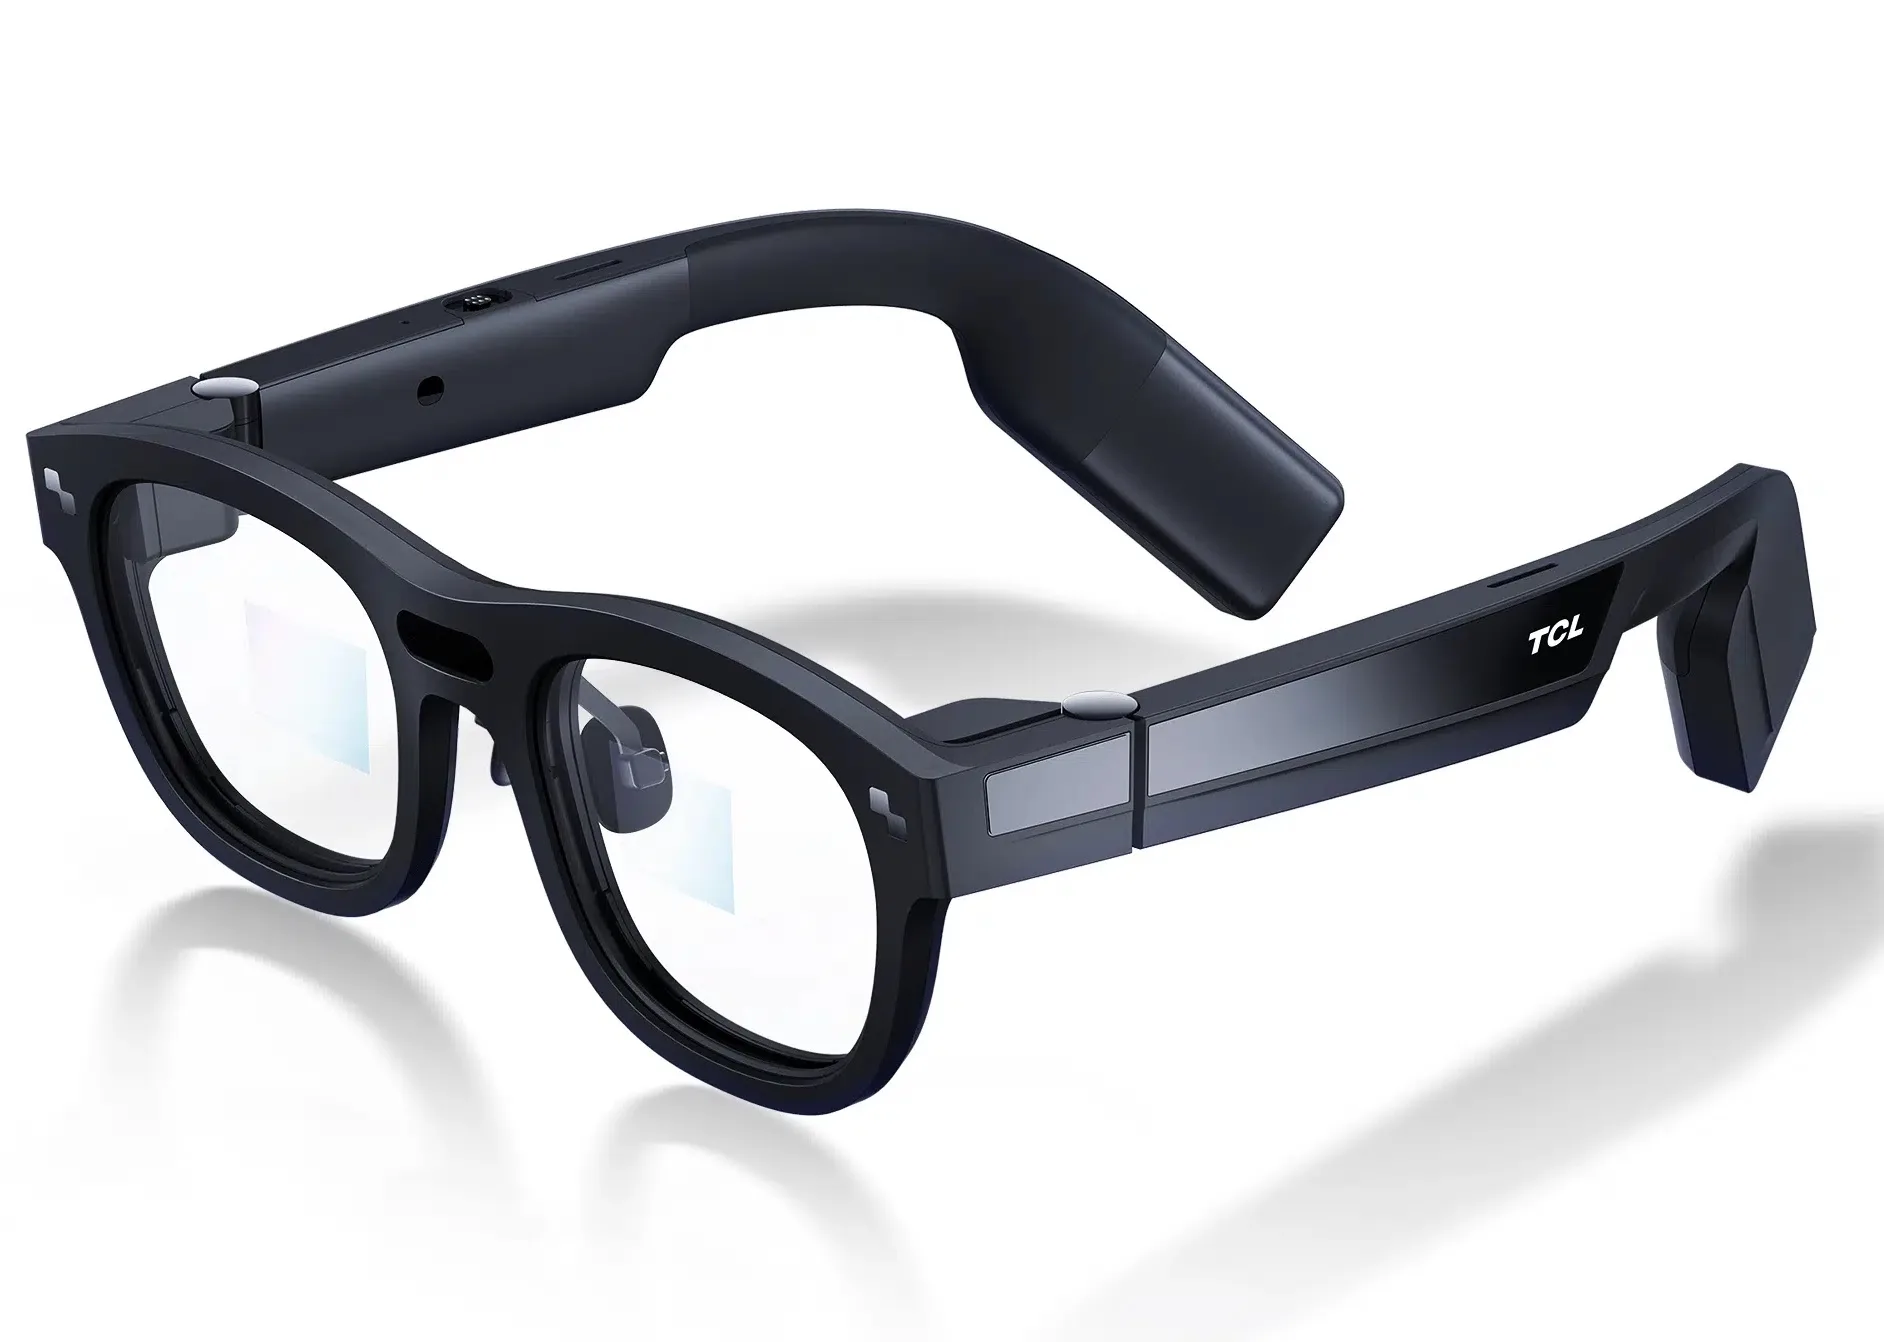 CES 2022: Engo-1 – Superleichte AR-Brille für ein verbessertes